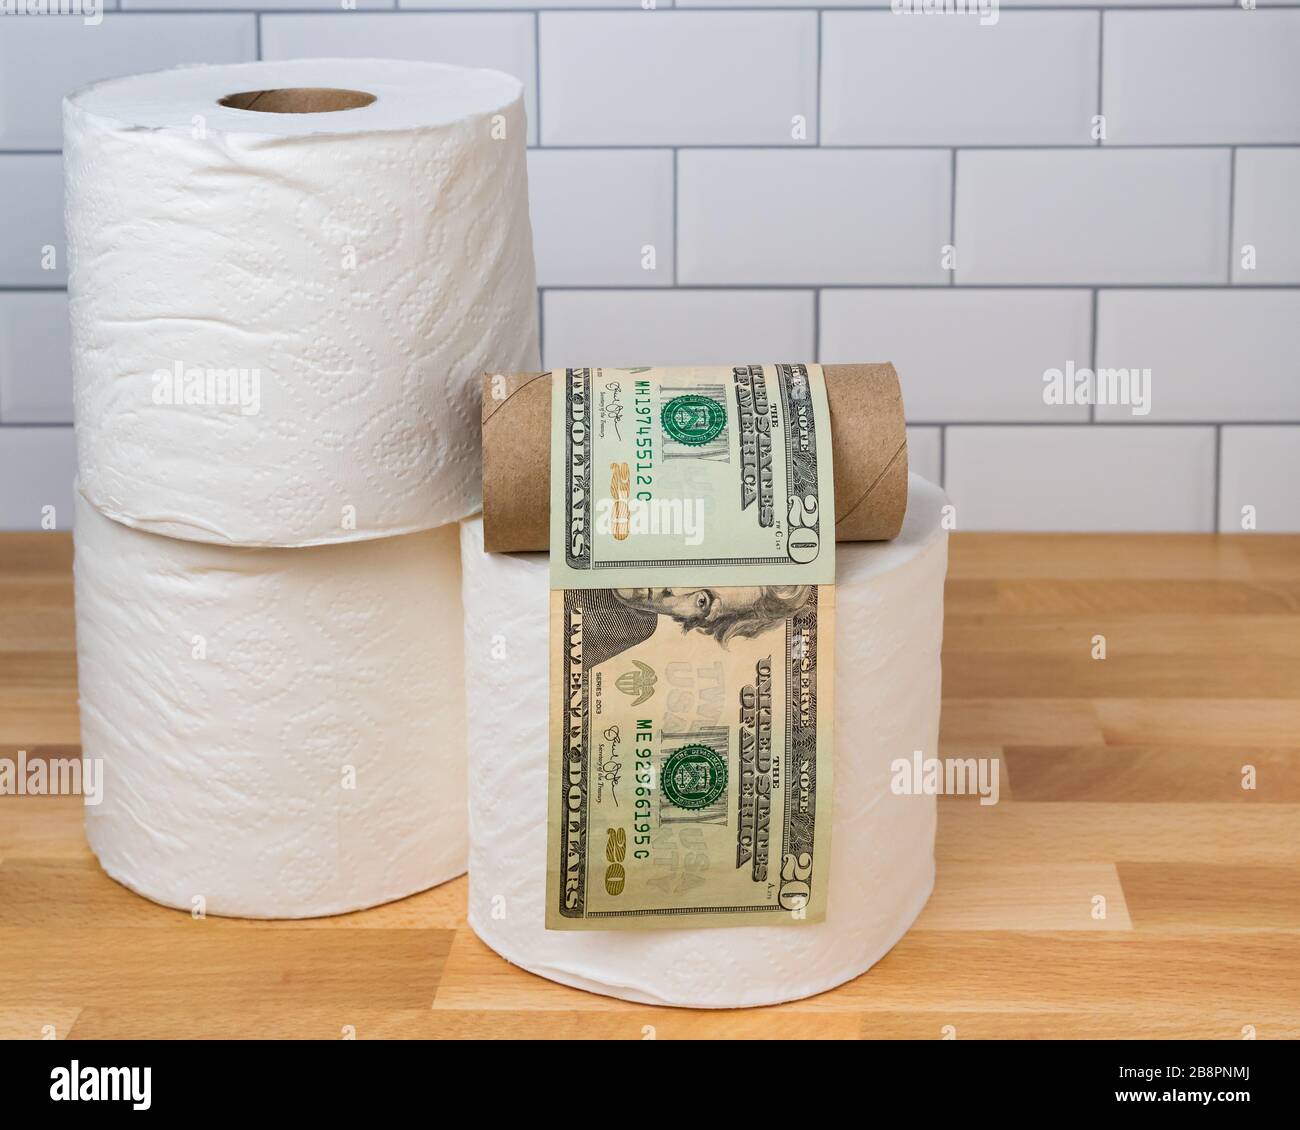 Rouleau de papier toilette vide enveloppé dans des factures de 20 dollars. Concept de pénurie d'approvisionnement, de ralentissement, de gougeage des prix pendant la pandémie mondiale de coronavirus Covid-19 Banque D'Images